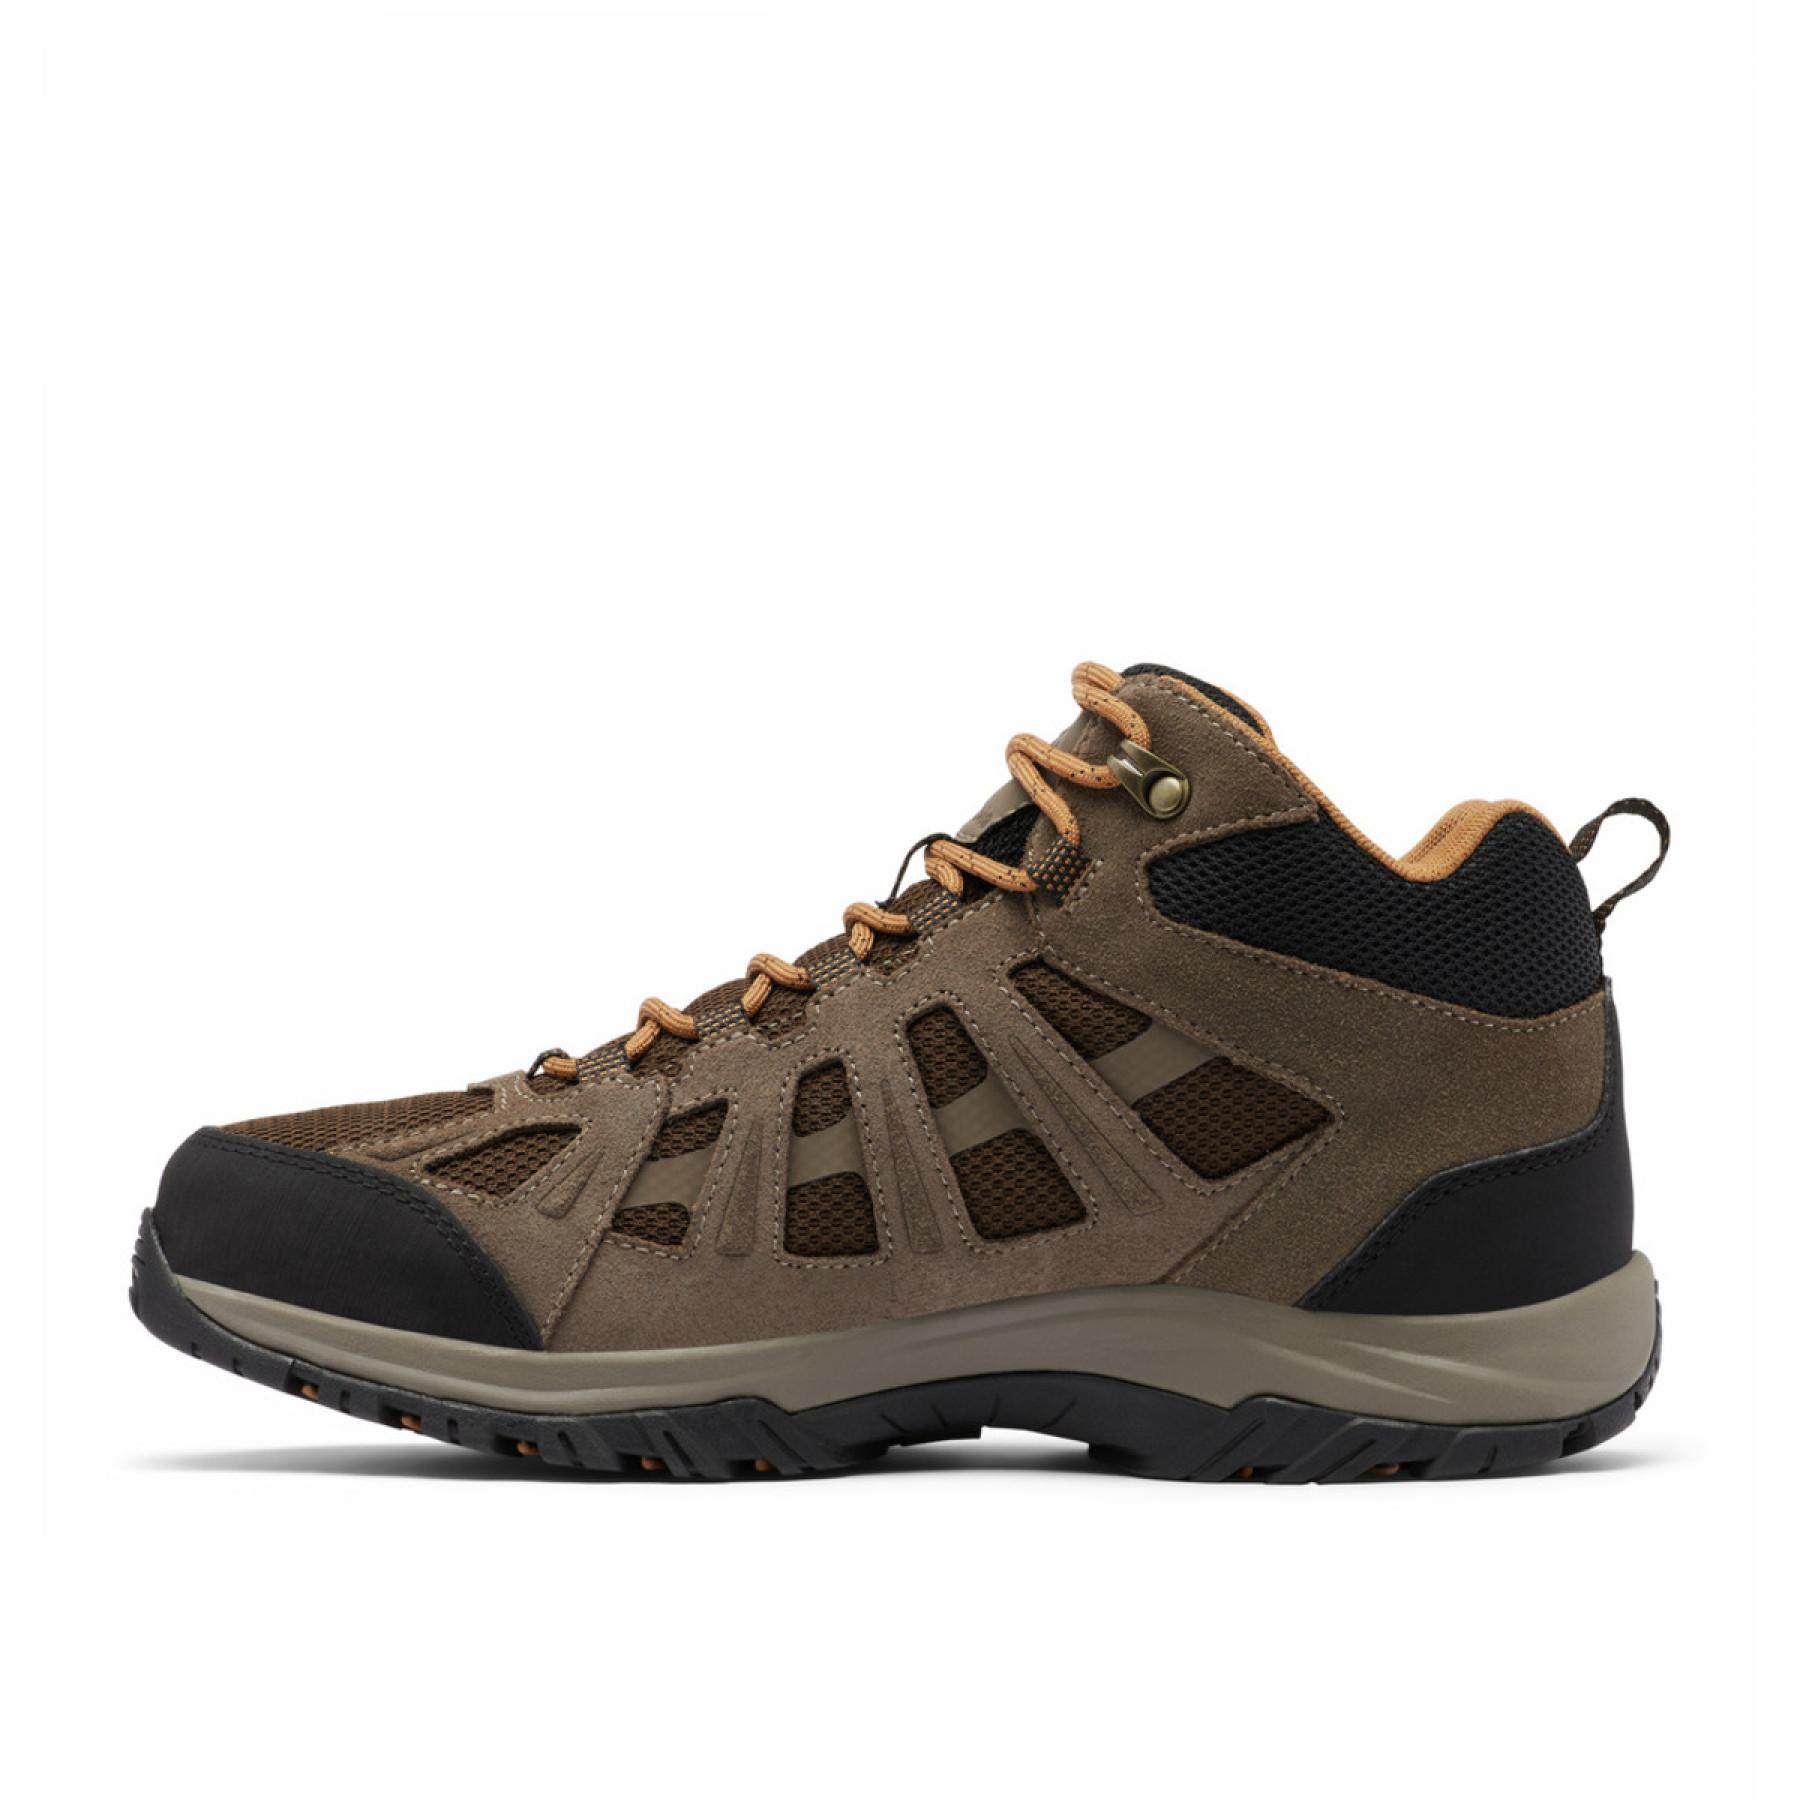 Chaussures de randonnée imperméables Columbia Redmond III Mid